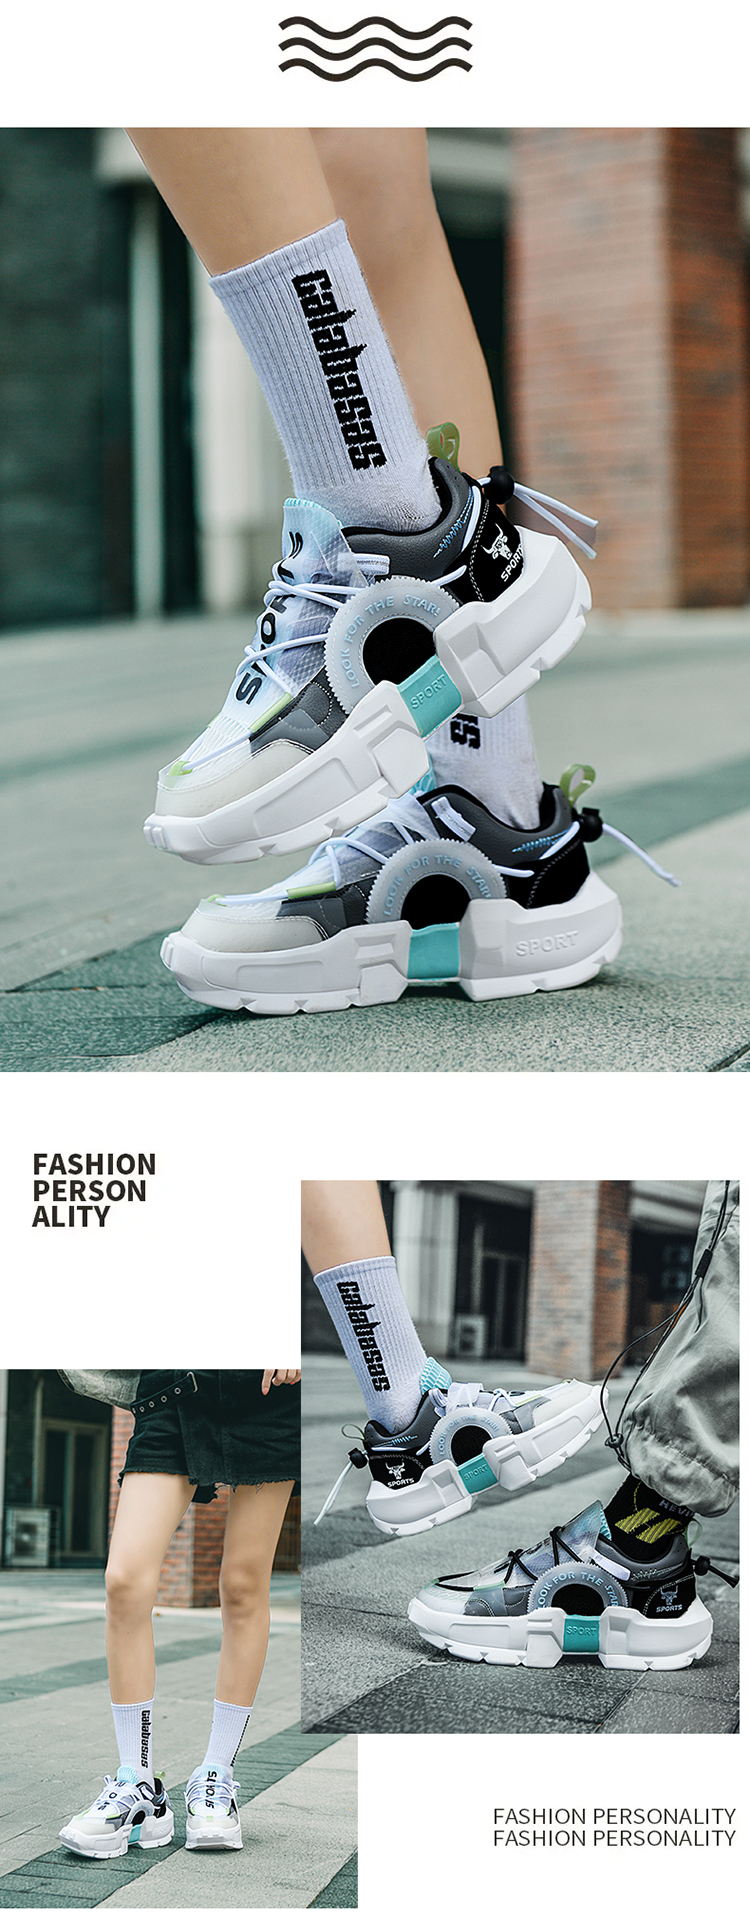 come4buy.com-Hot an Stylesch Liebhaber Gummi Plattform Schong Sneakers